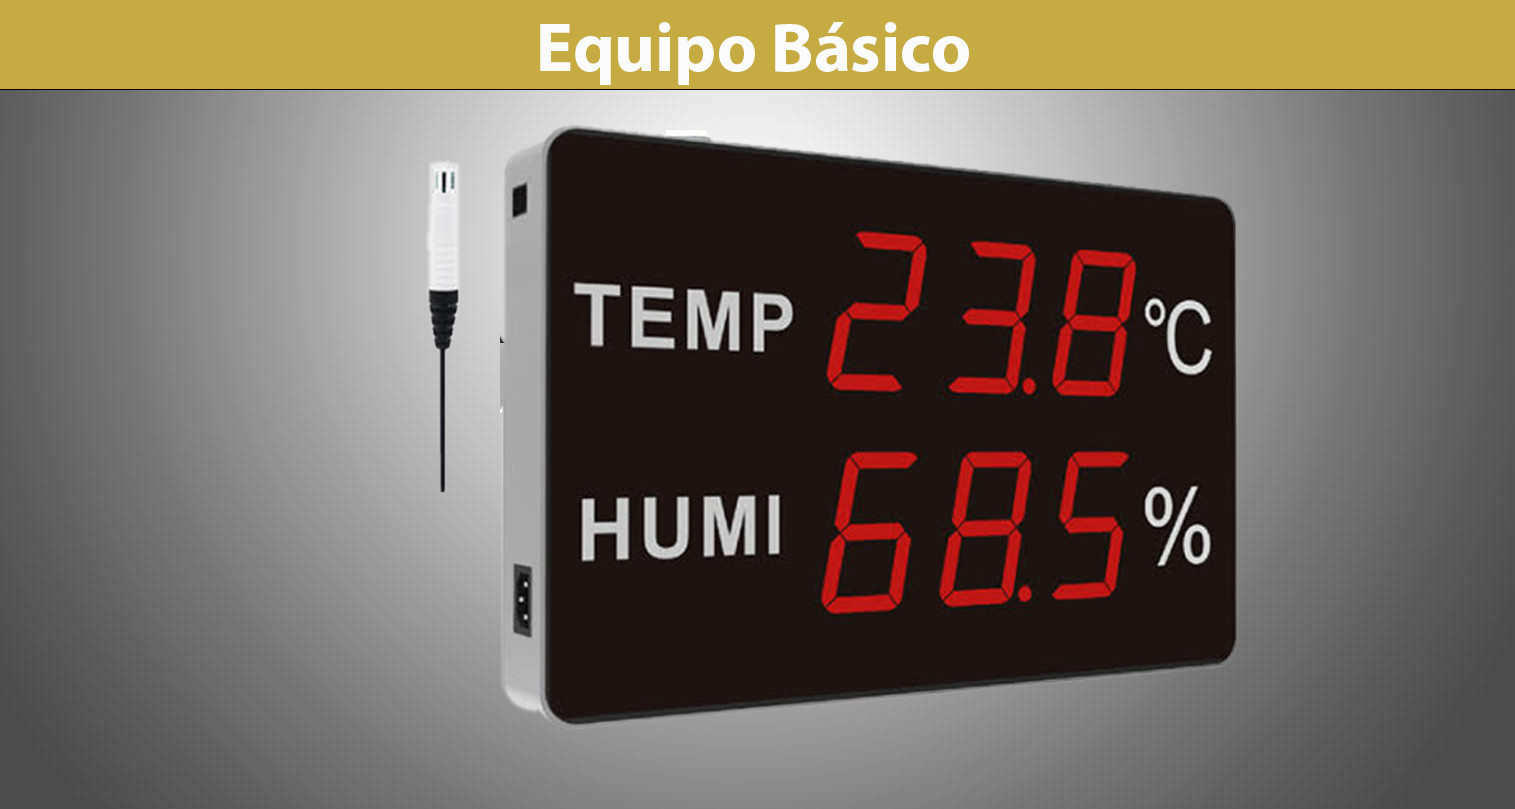 Sensor de Temperatura, humedad, luz Ambiental y Vibración WS1